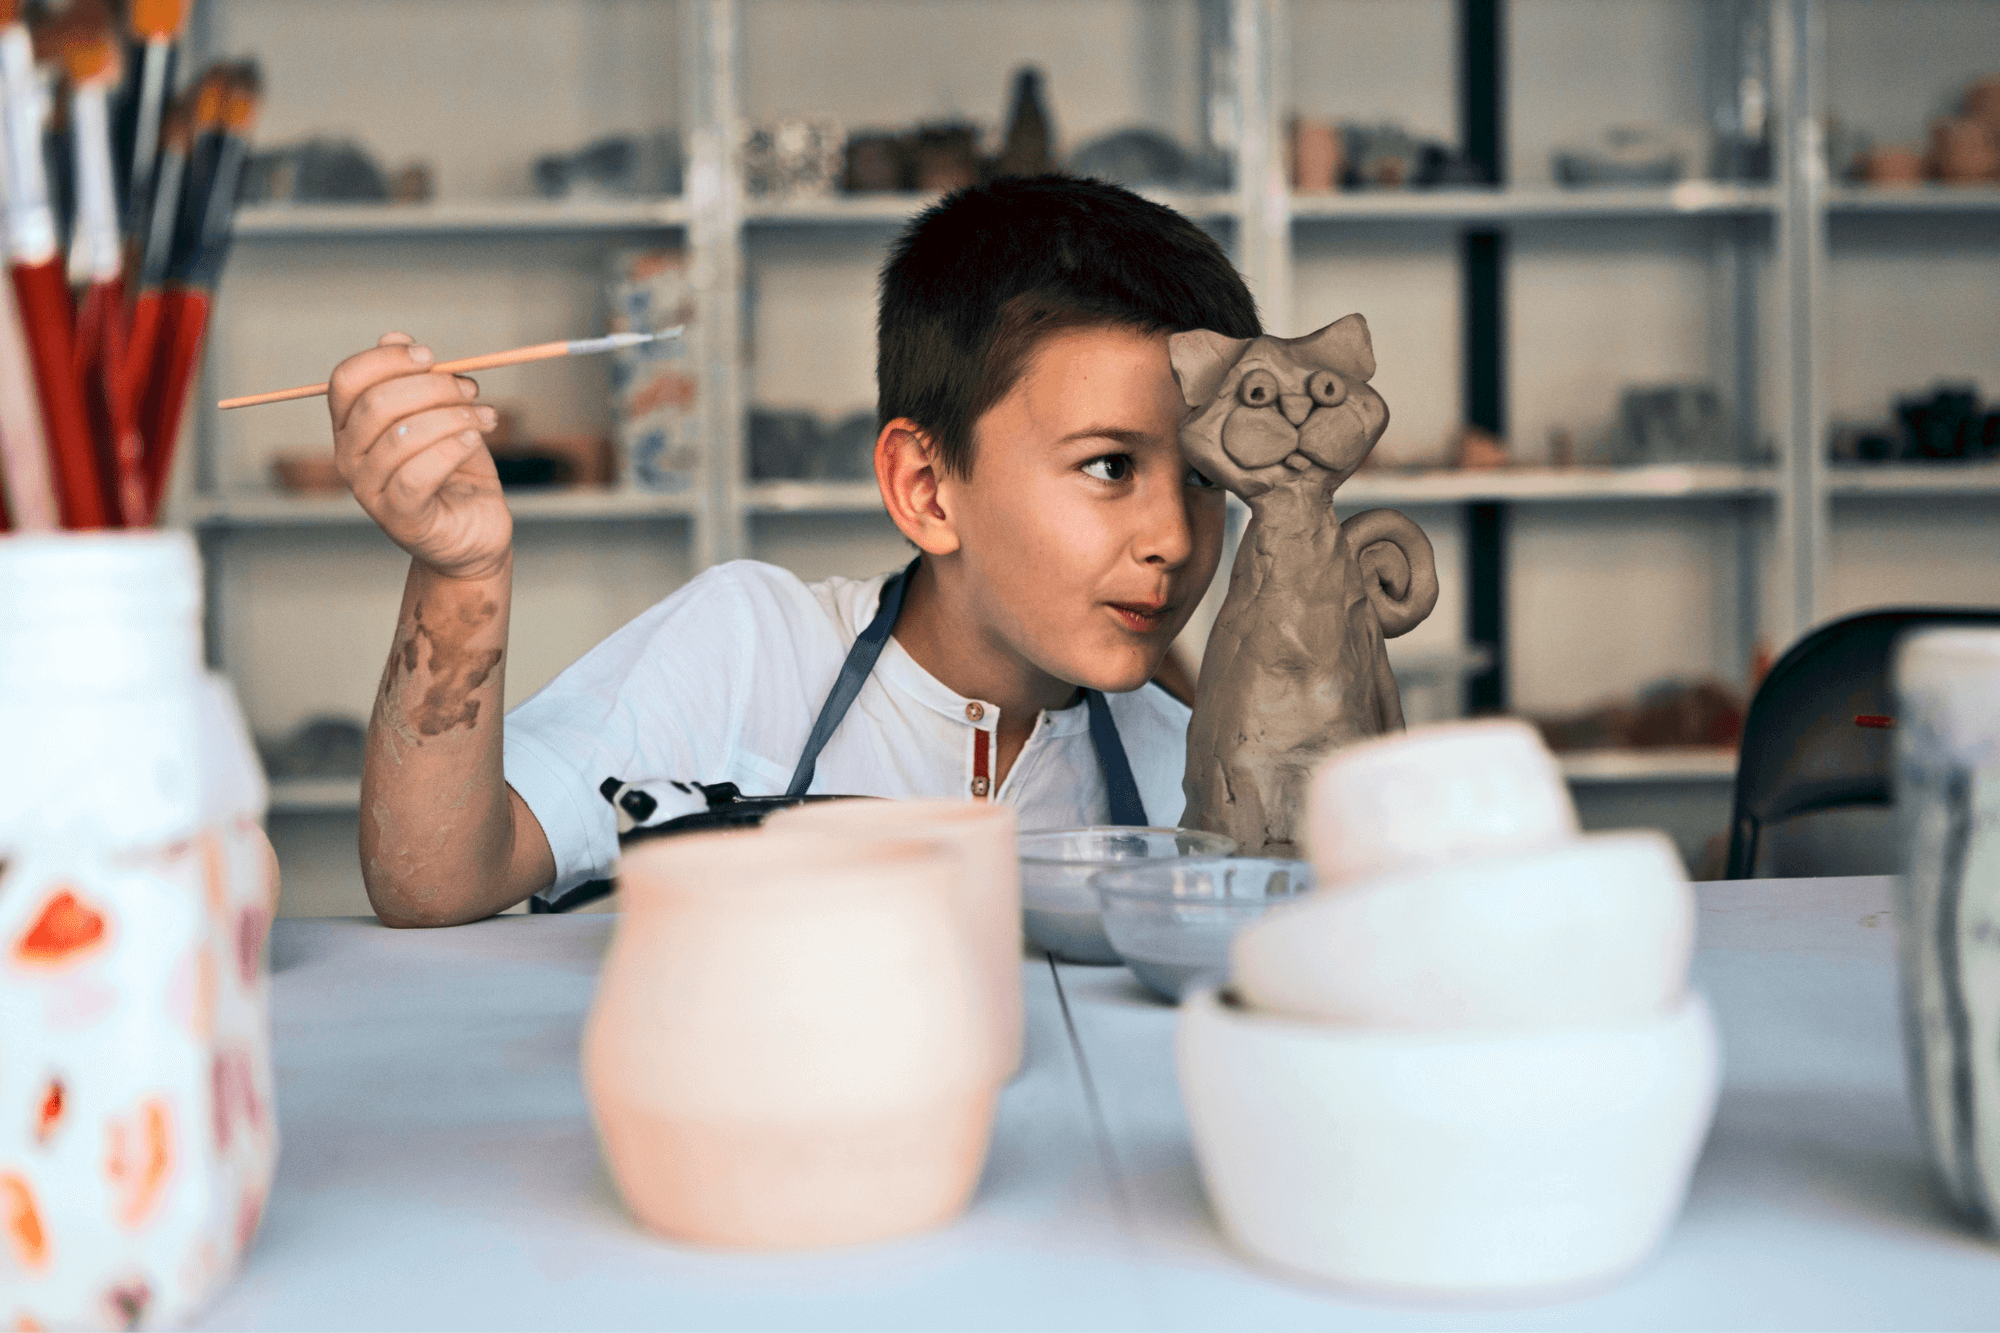 Tag med til hyggeligt keramikkursus for børn og voksne